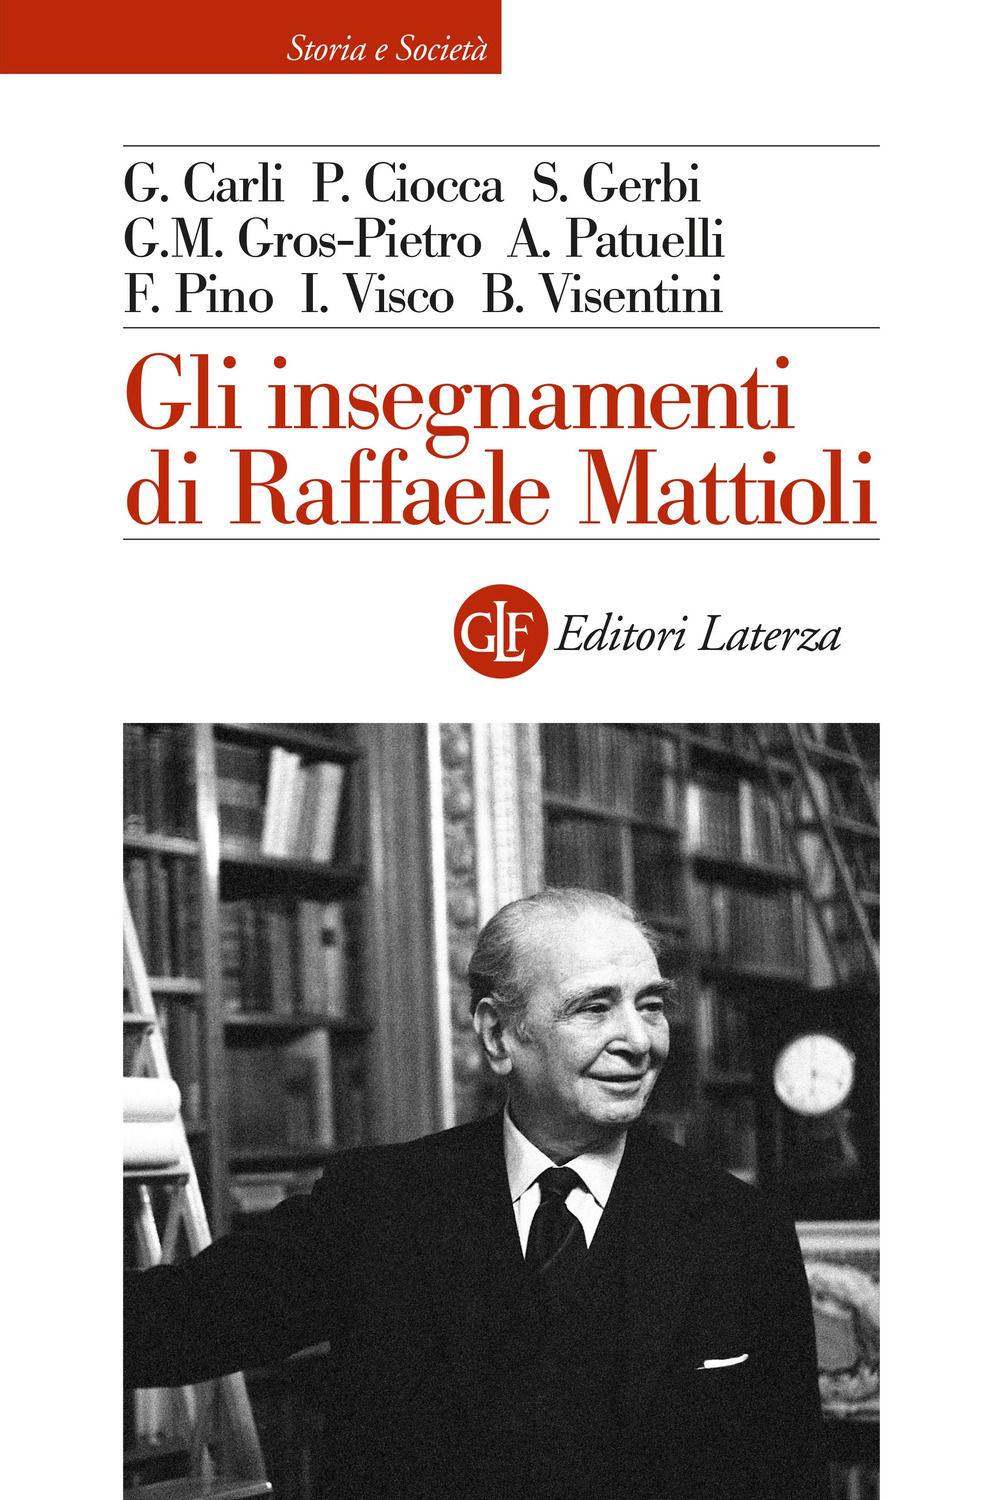 Gli insegnamenti di Raffaele Mattioli